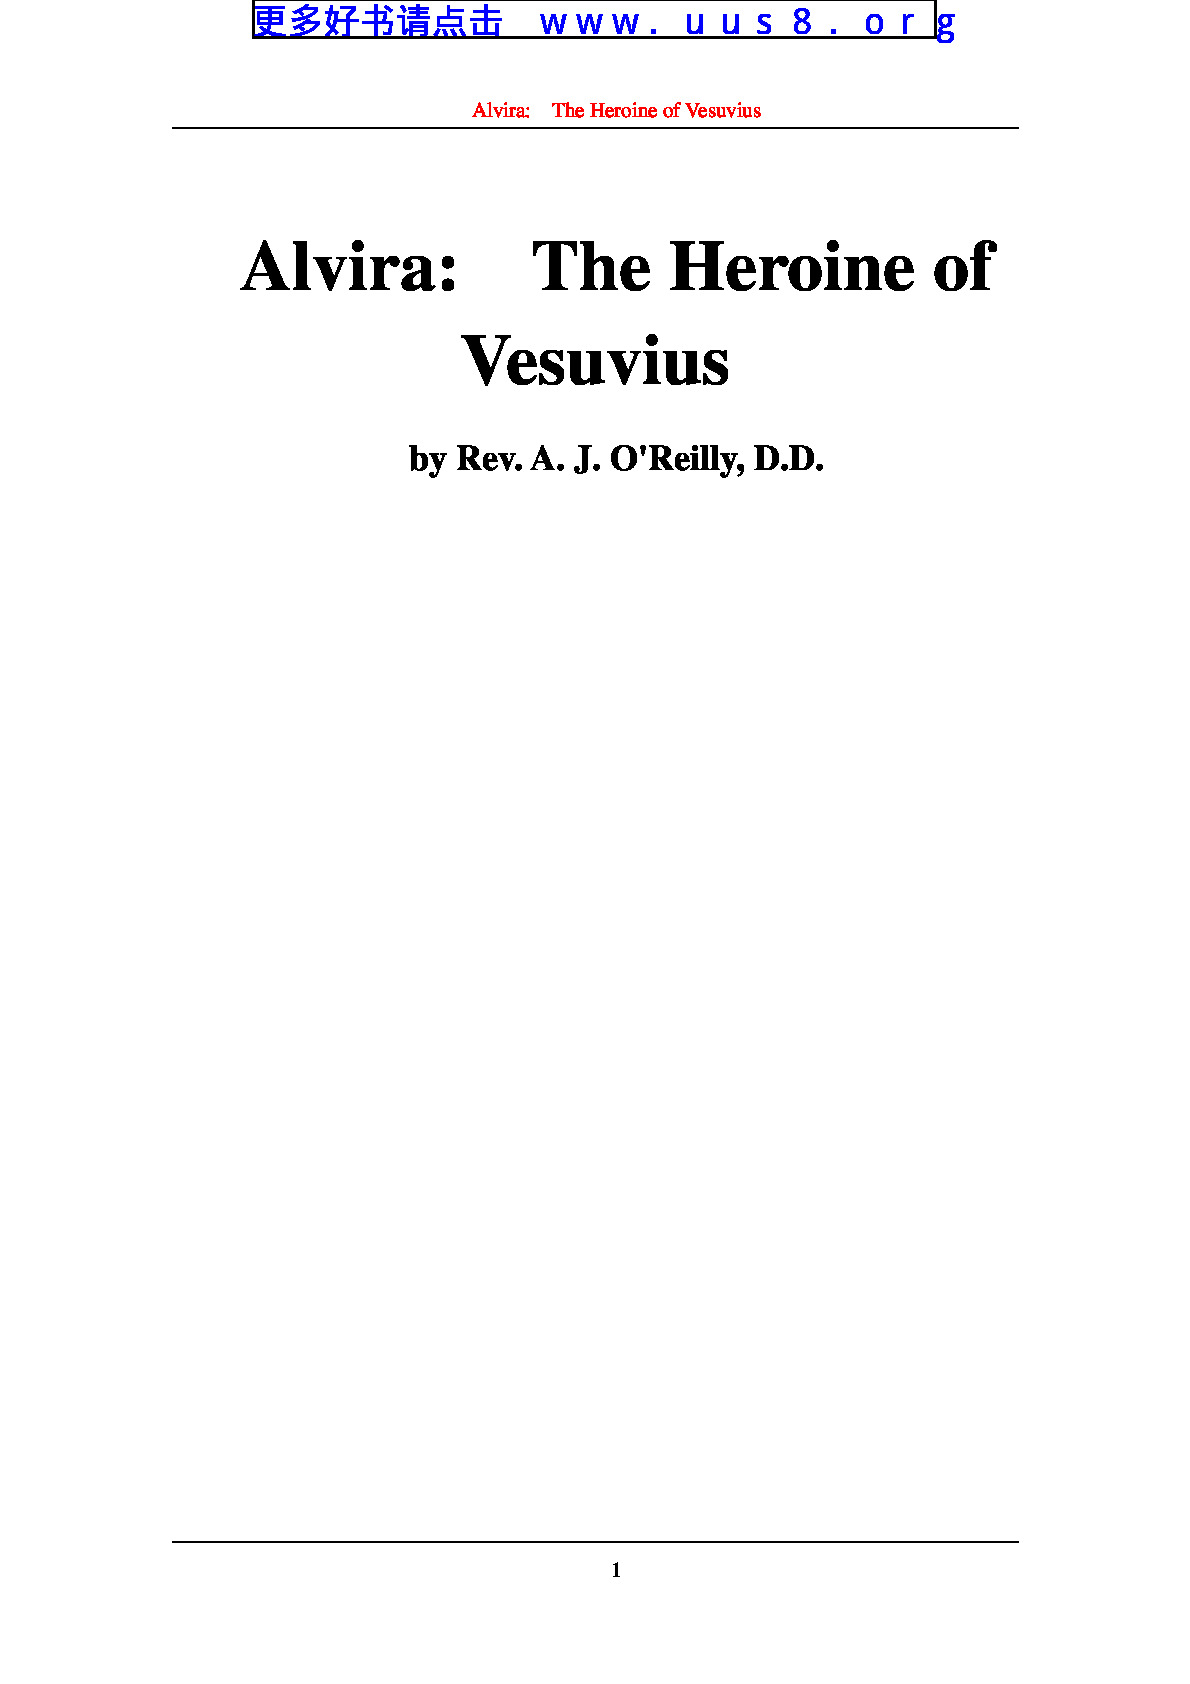 Alvira-__The_Heroine_of_Vesuvius(艾尔维拉,维苏威的女英雄)